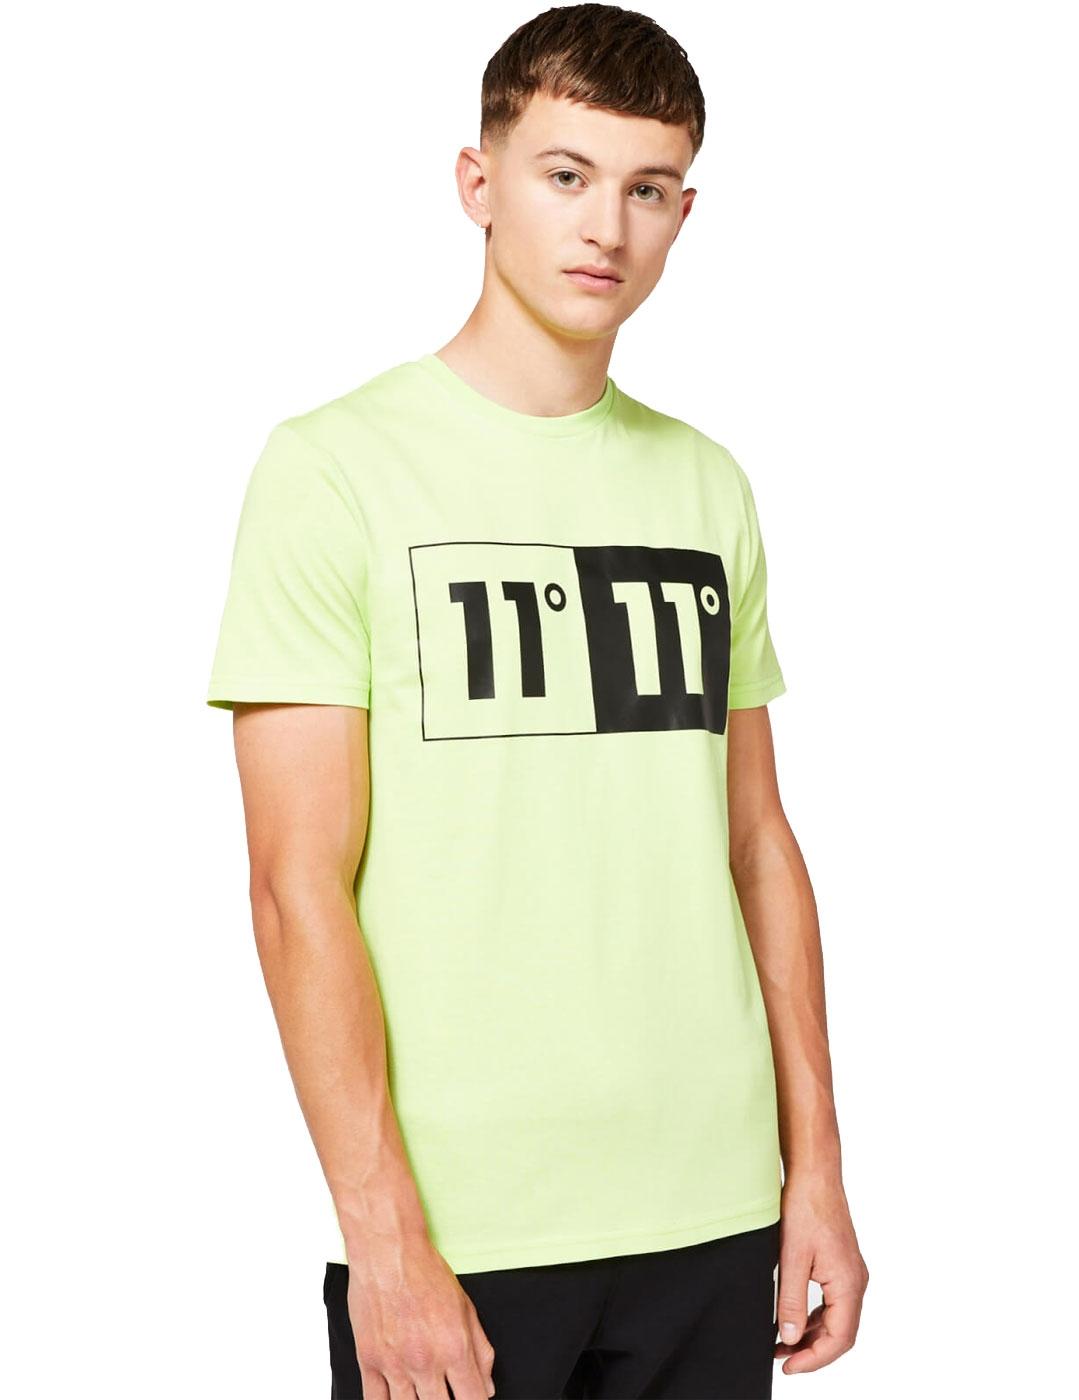 Camiseta 11º Degrees verde para hombre